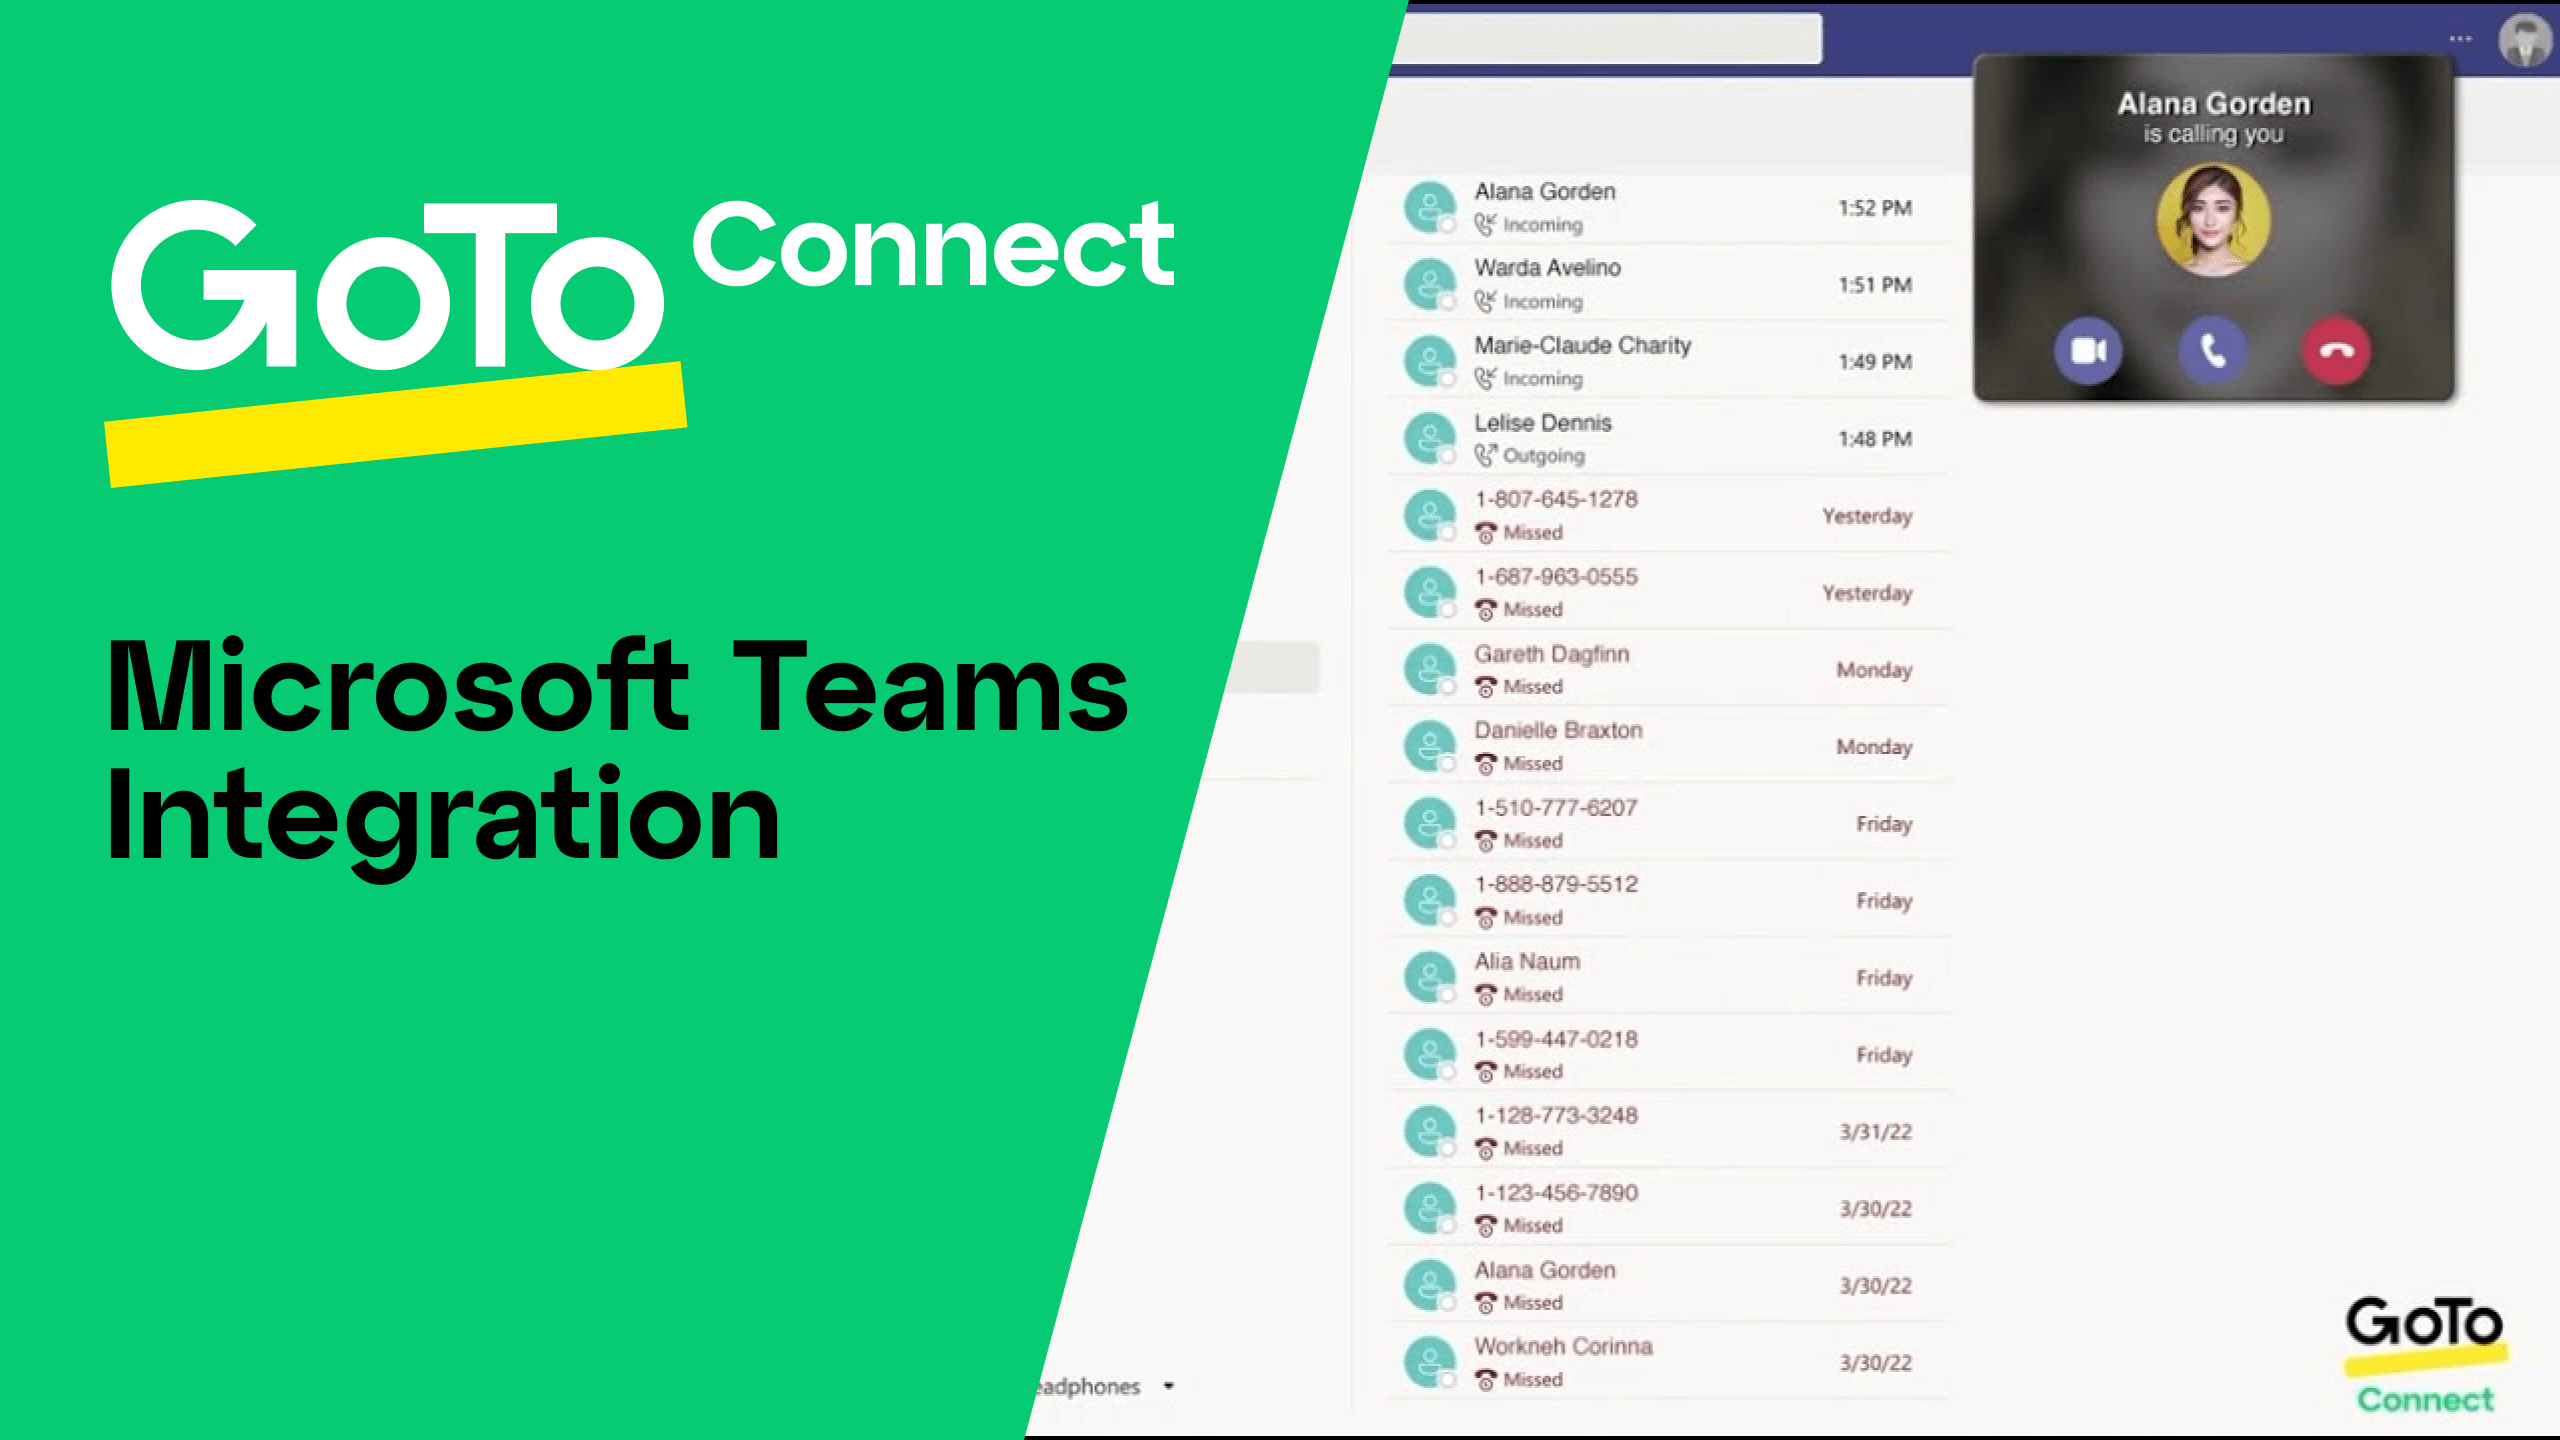 Cliquez pour lire la vidéo « Intégration avec Microsoft Teams de GoTo Connect ».